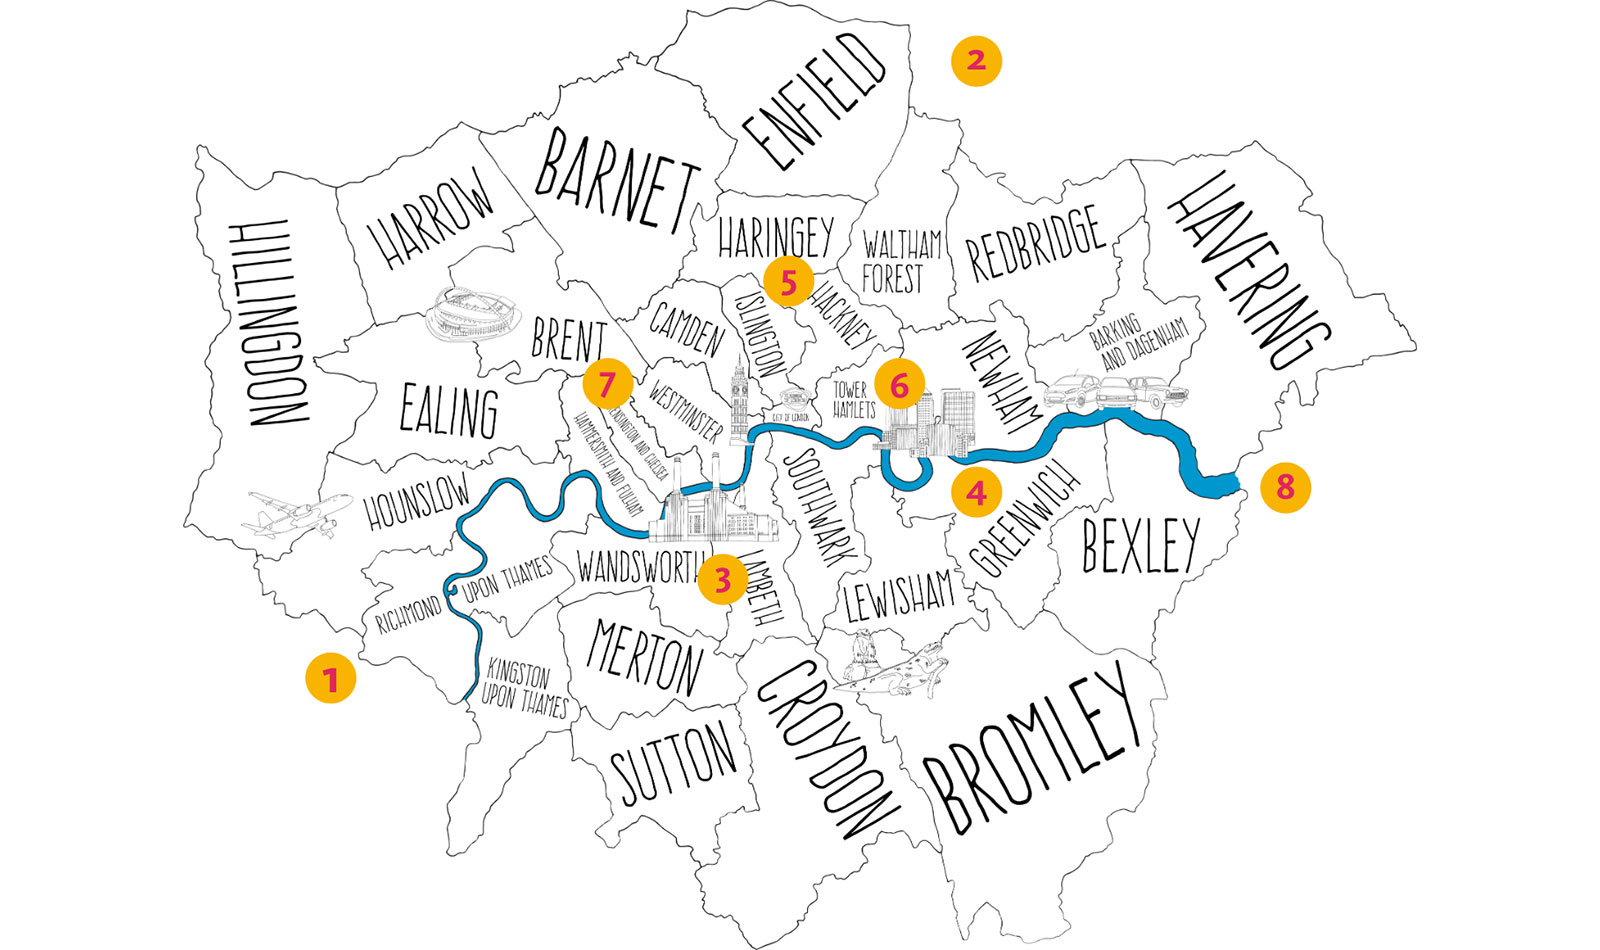 Curating London map hero image